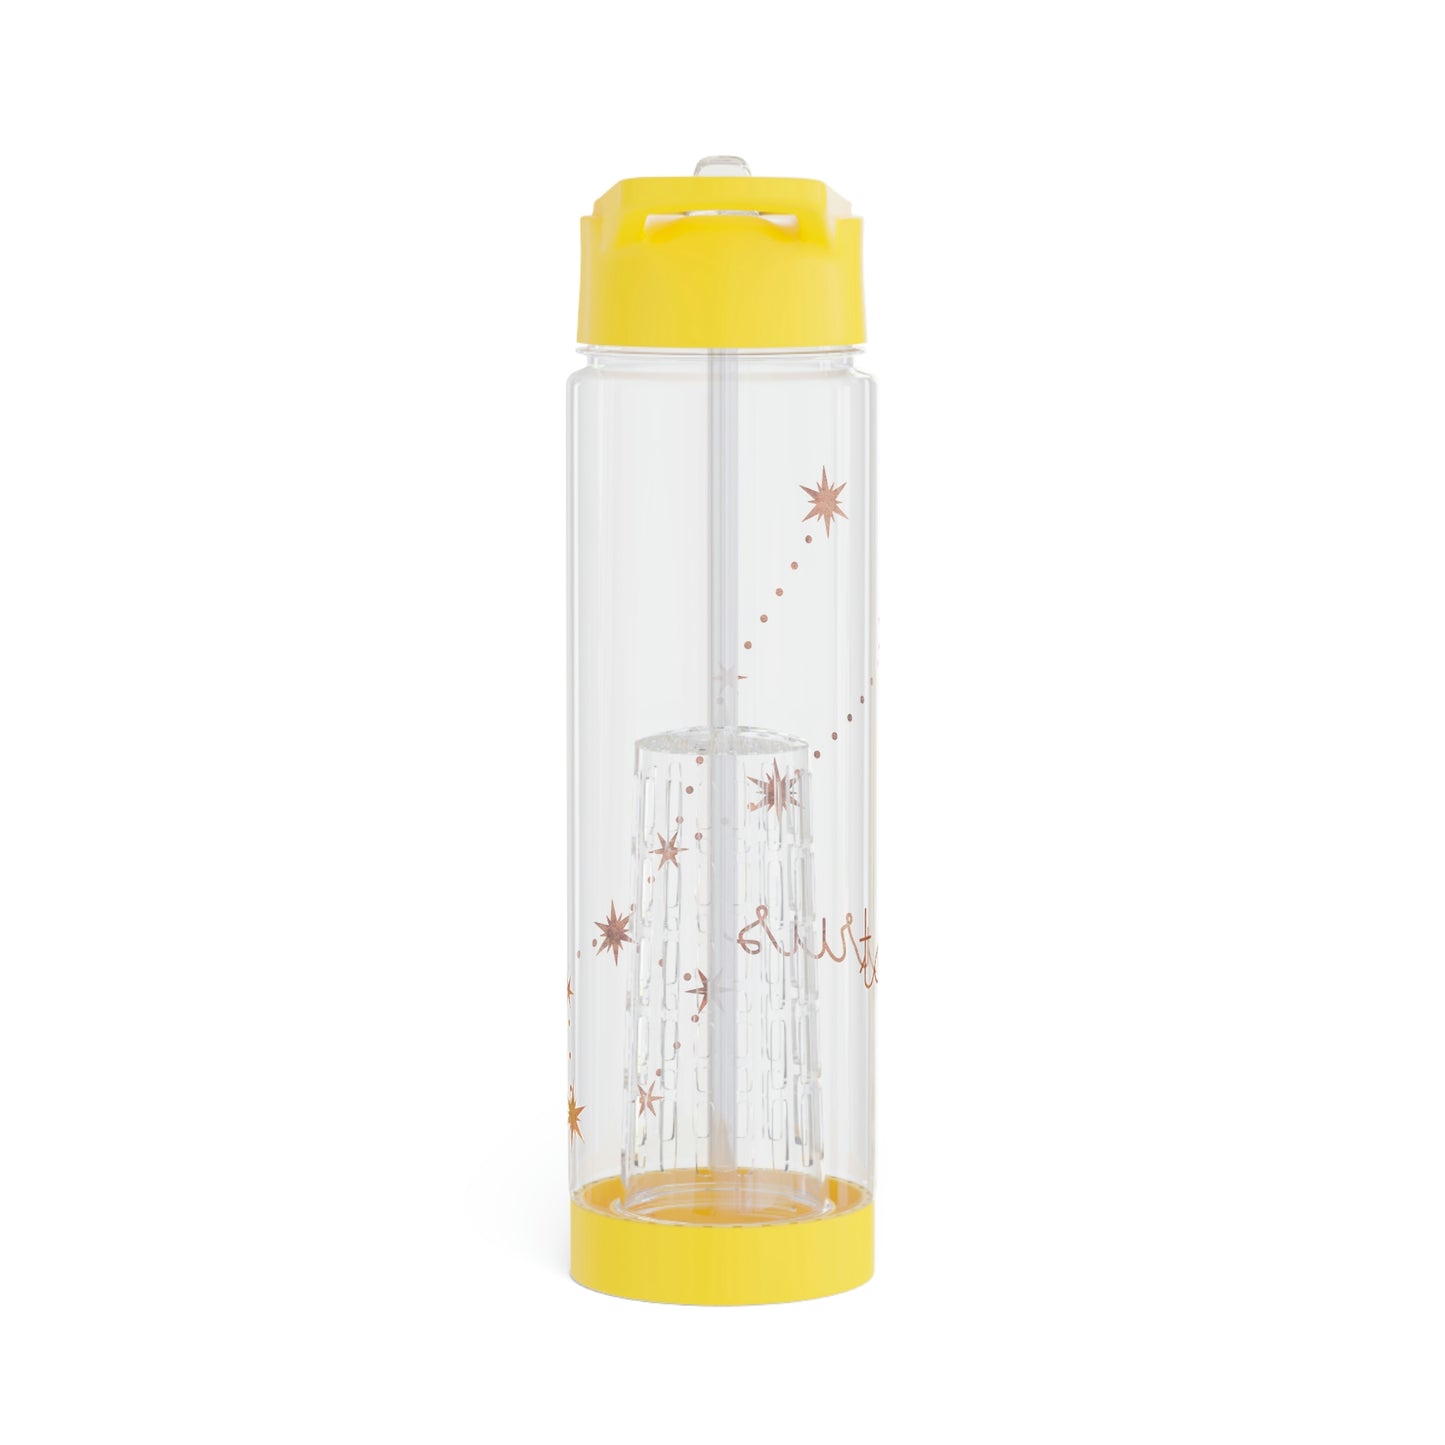 Taurus Constellation Infuser Water Bottle